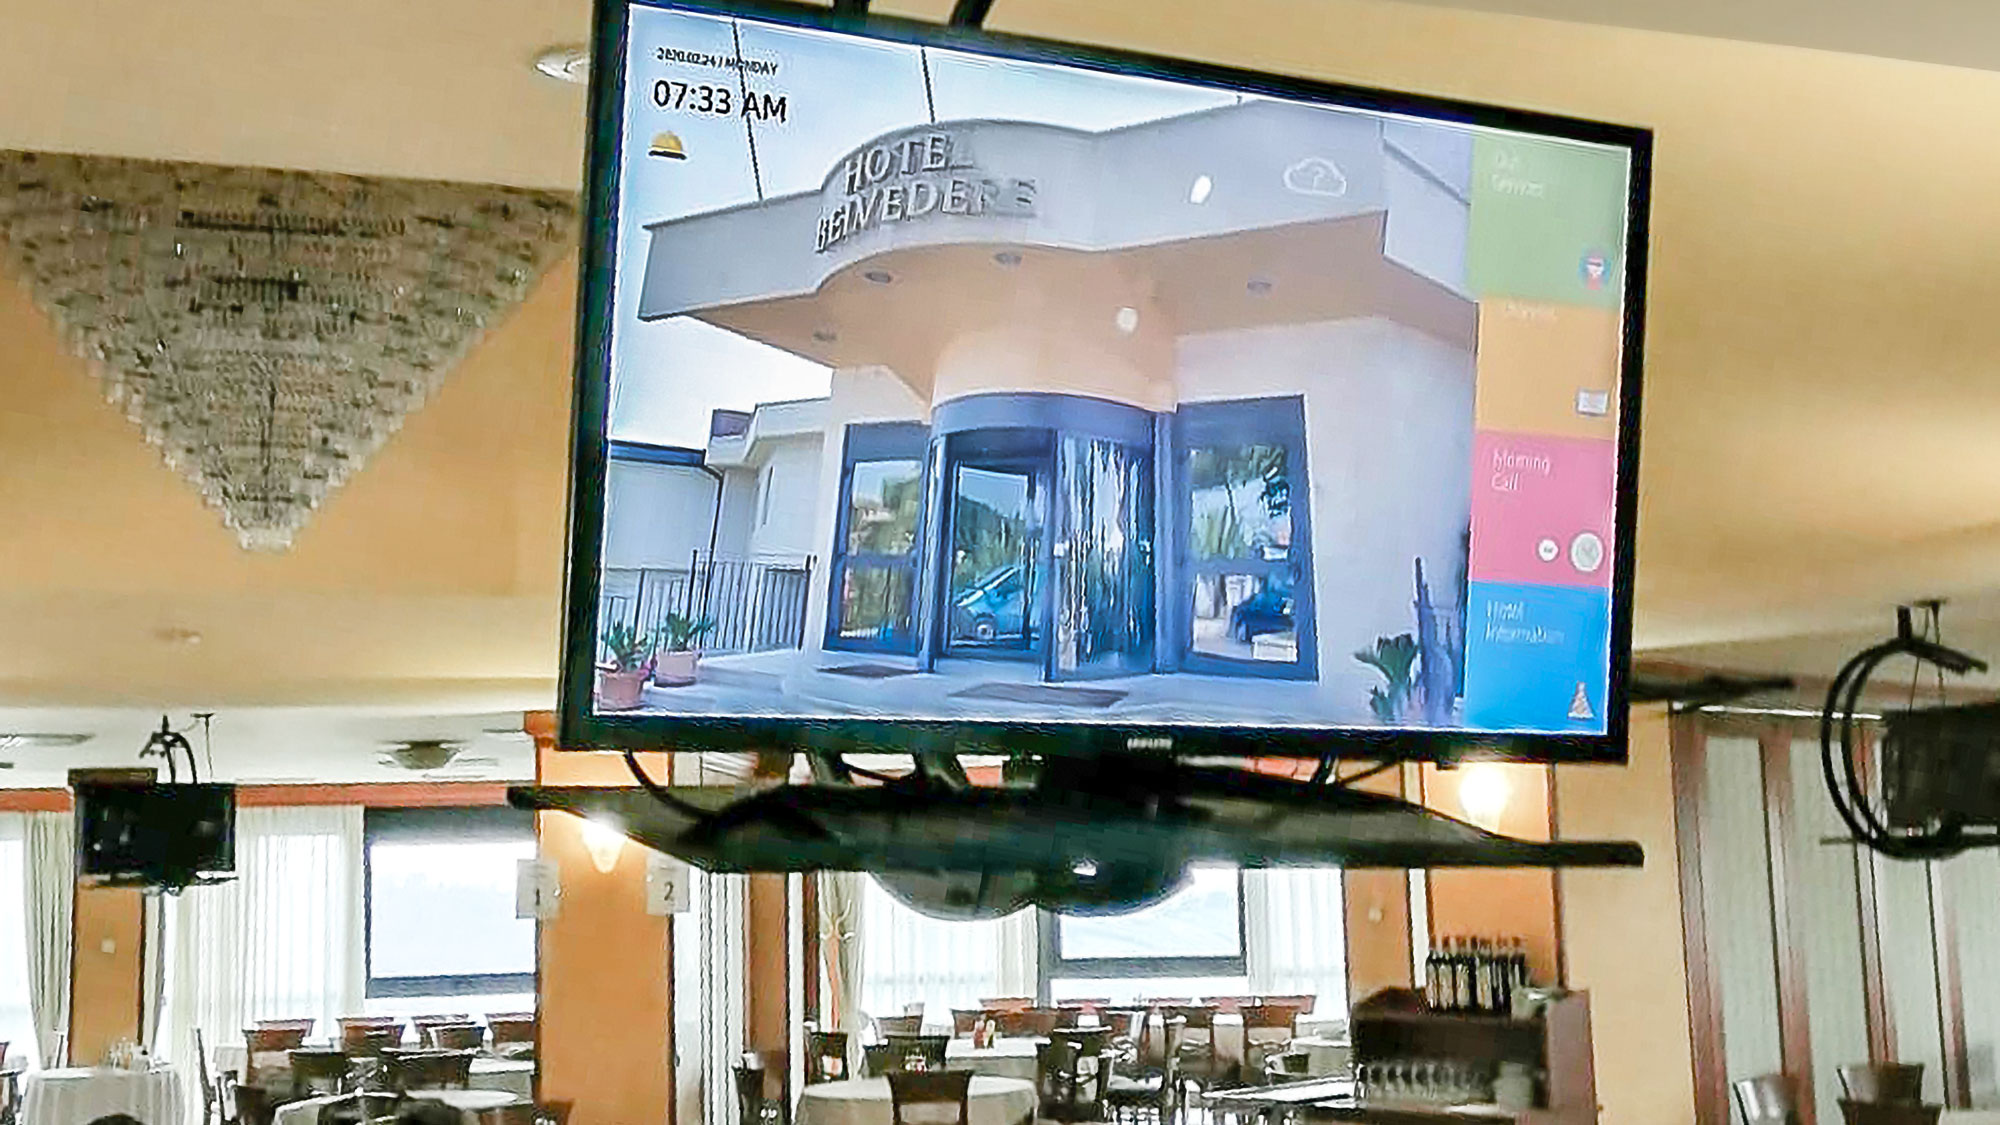 Samsung hotel tv installato a soffitto nella sala ristorante